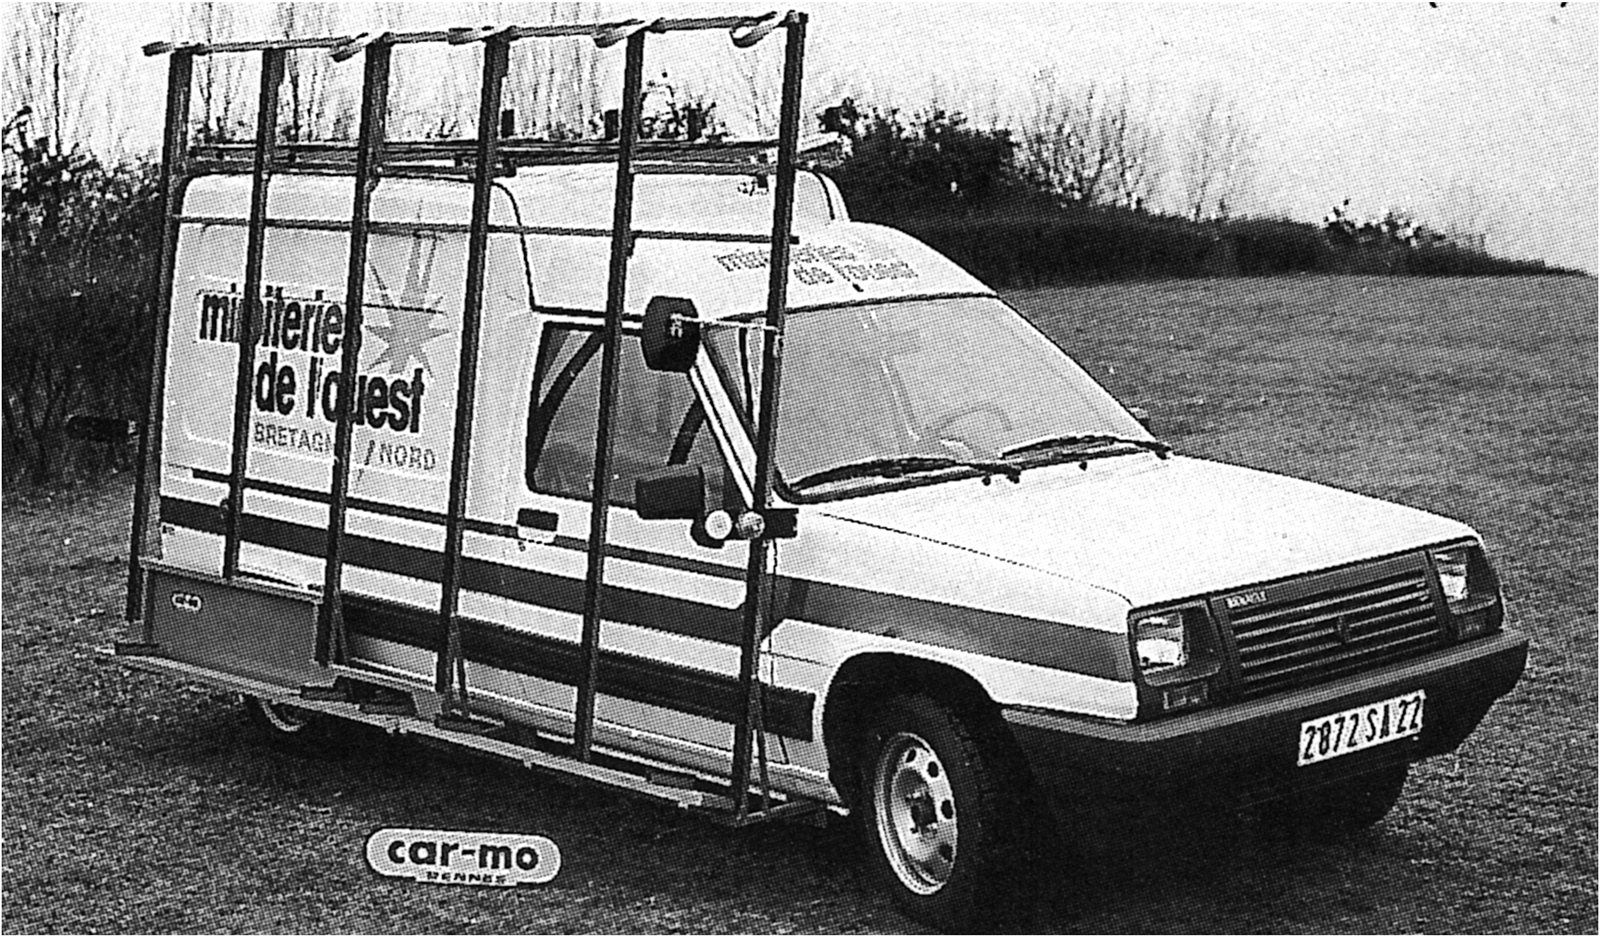 Renault Express 1985-1991. Présentée en avant première à l'ouverture de BATIMAT 1985 sur le stand car-mo et le jour même à la presse par RENAULT